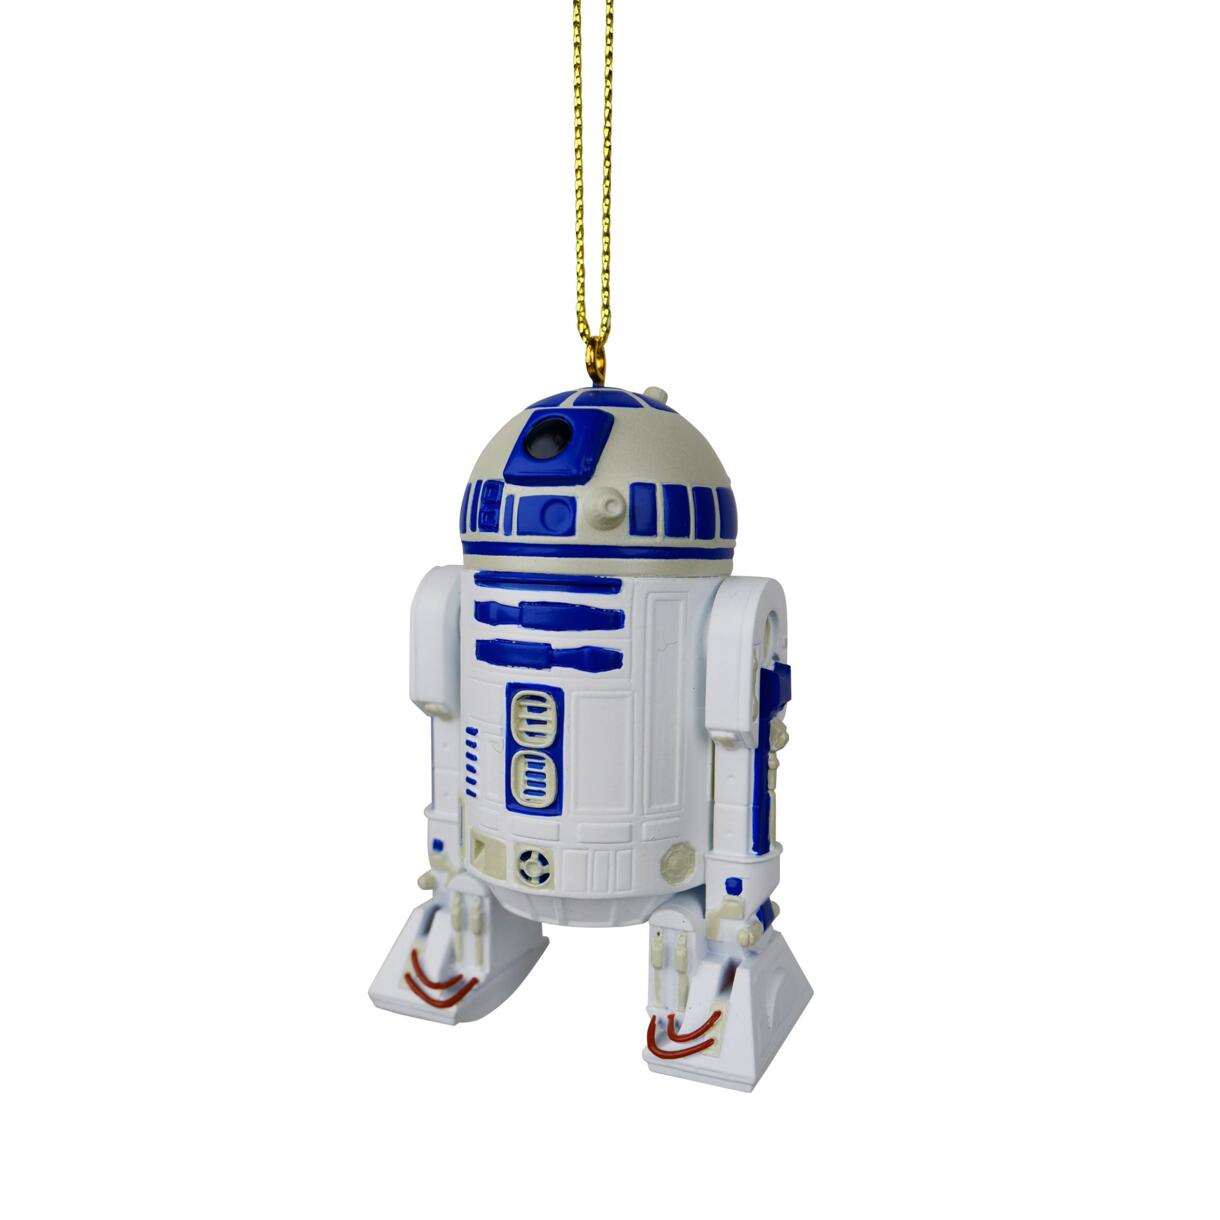 Suspension de fête Disney Star Wars R2-D2 Bleu 1